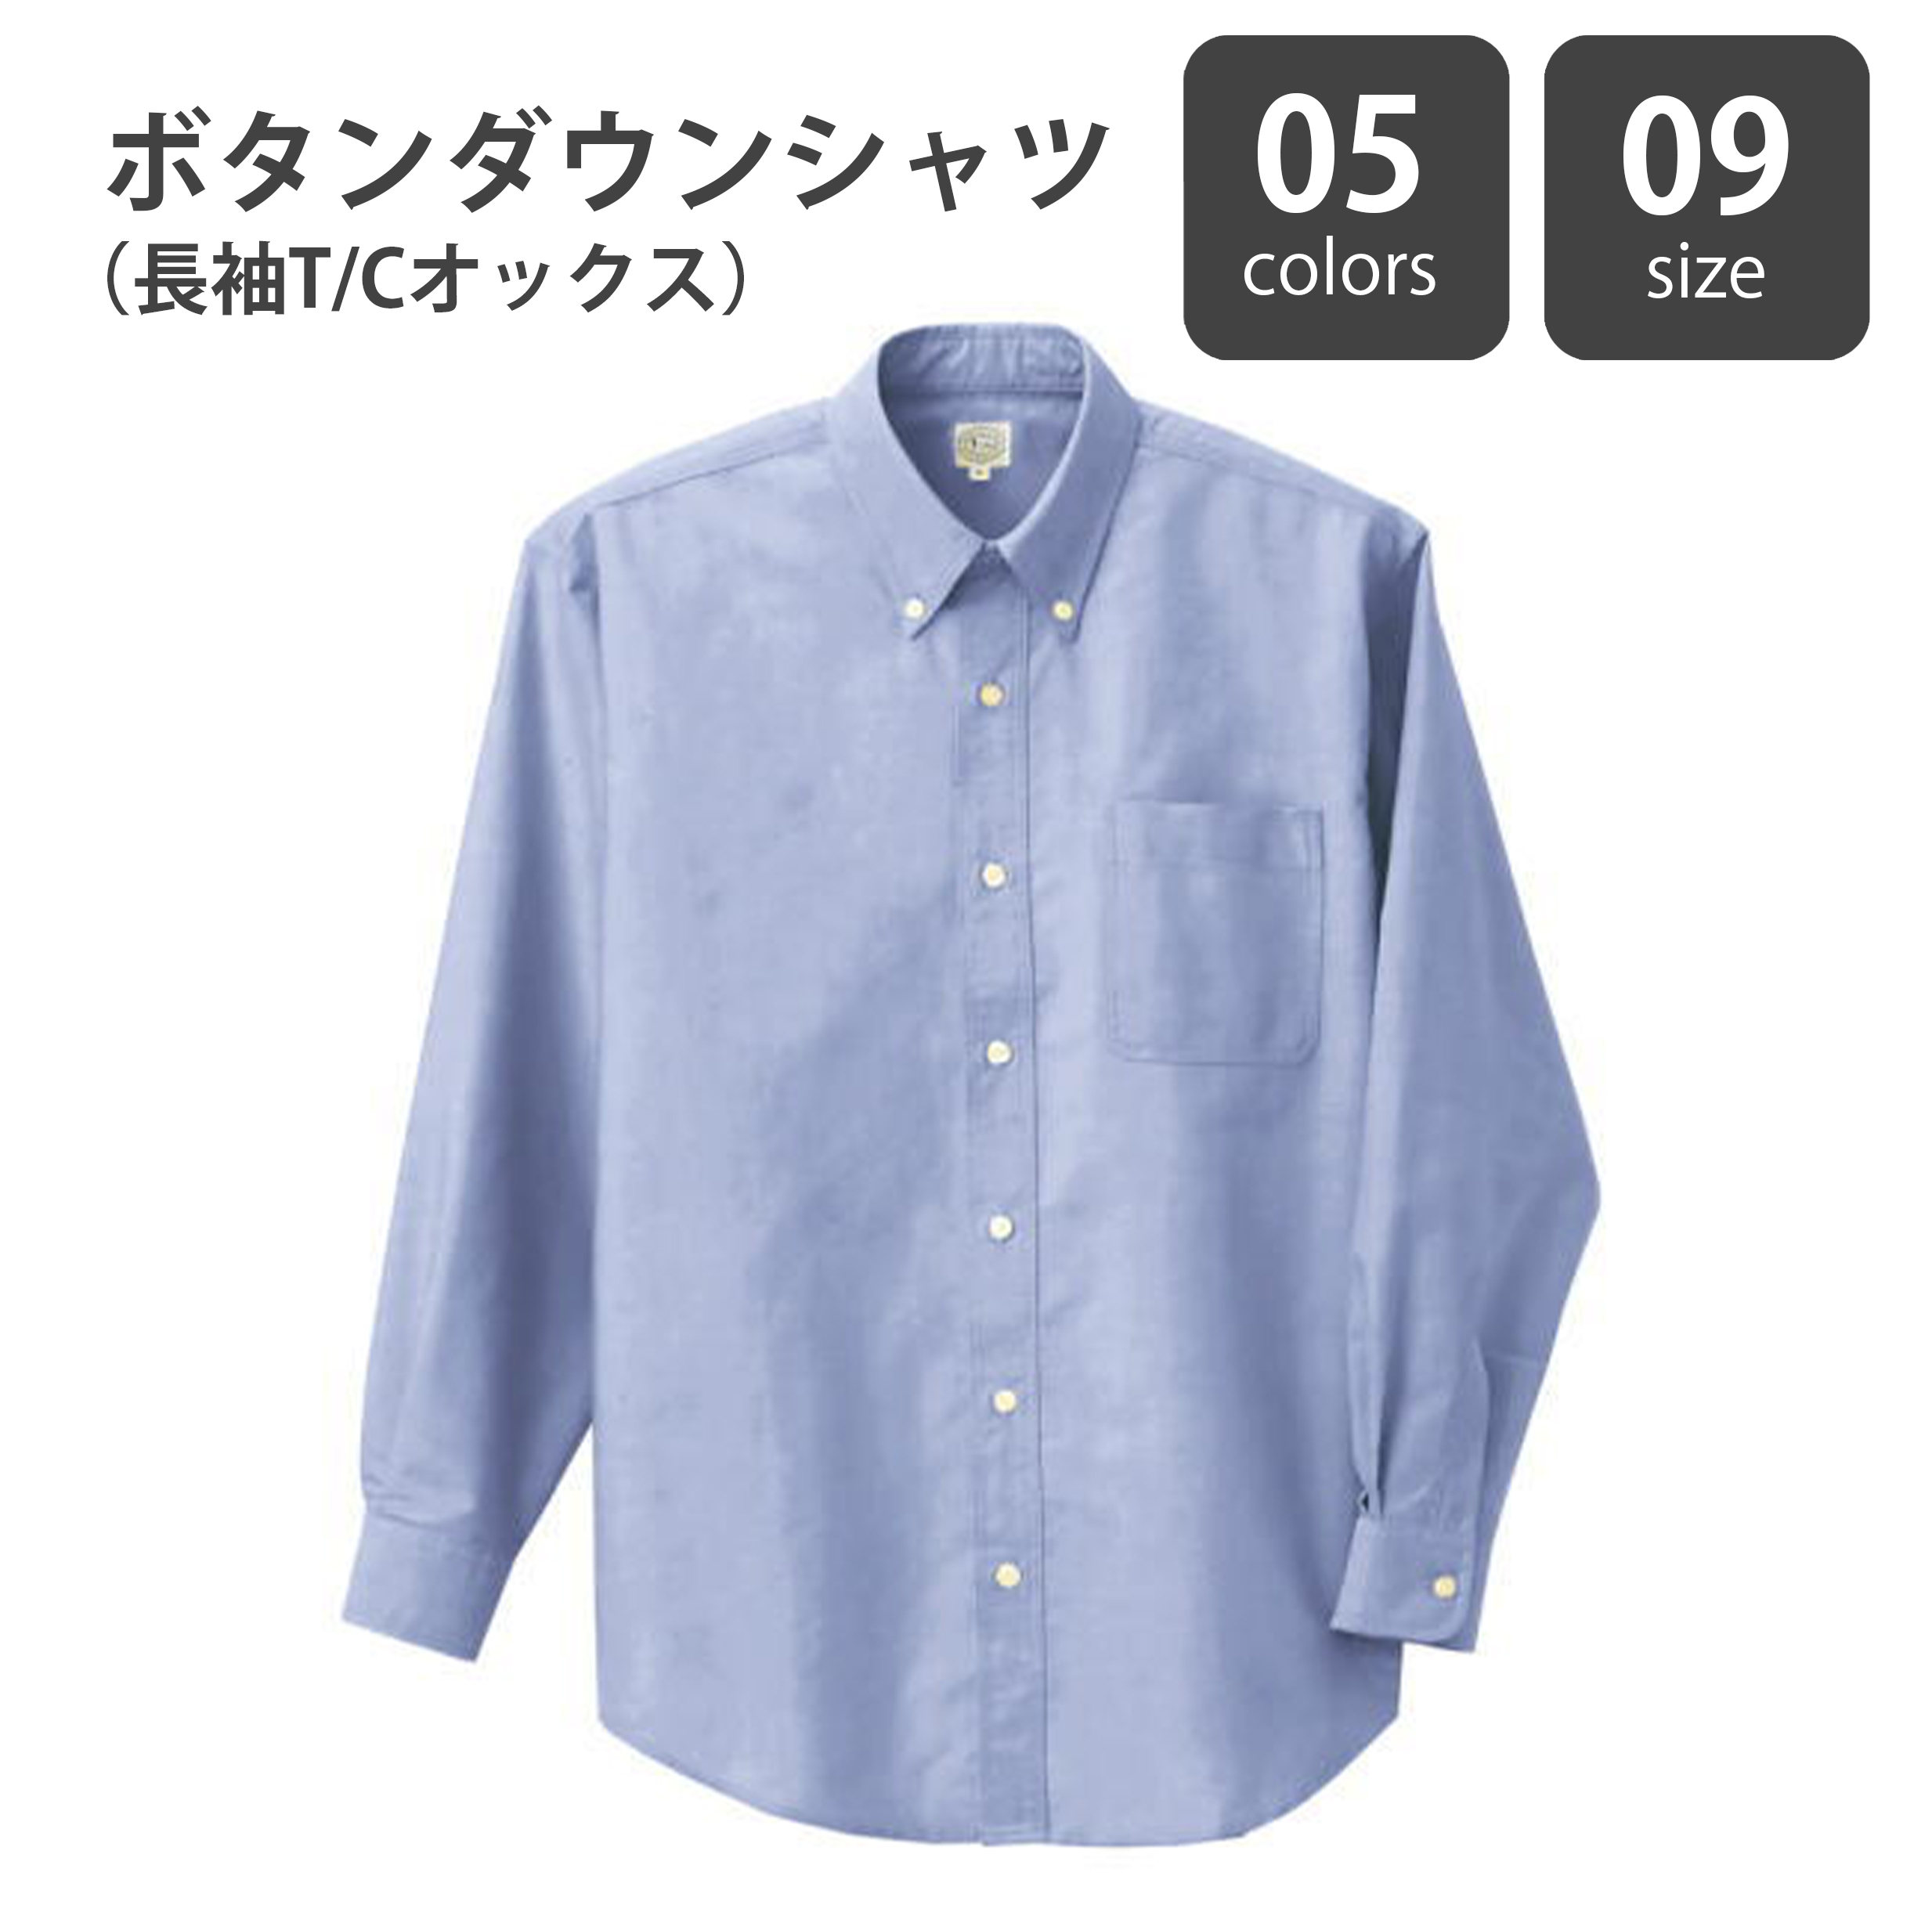 ボタンダウンシャツ（長袖T/Cオックス）ST-AZ7822